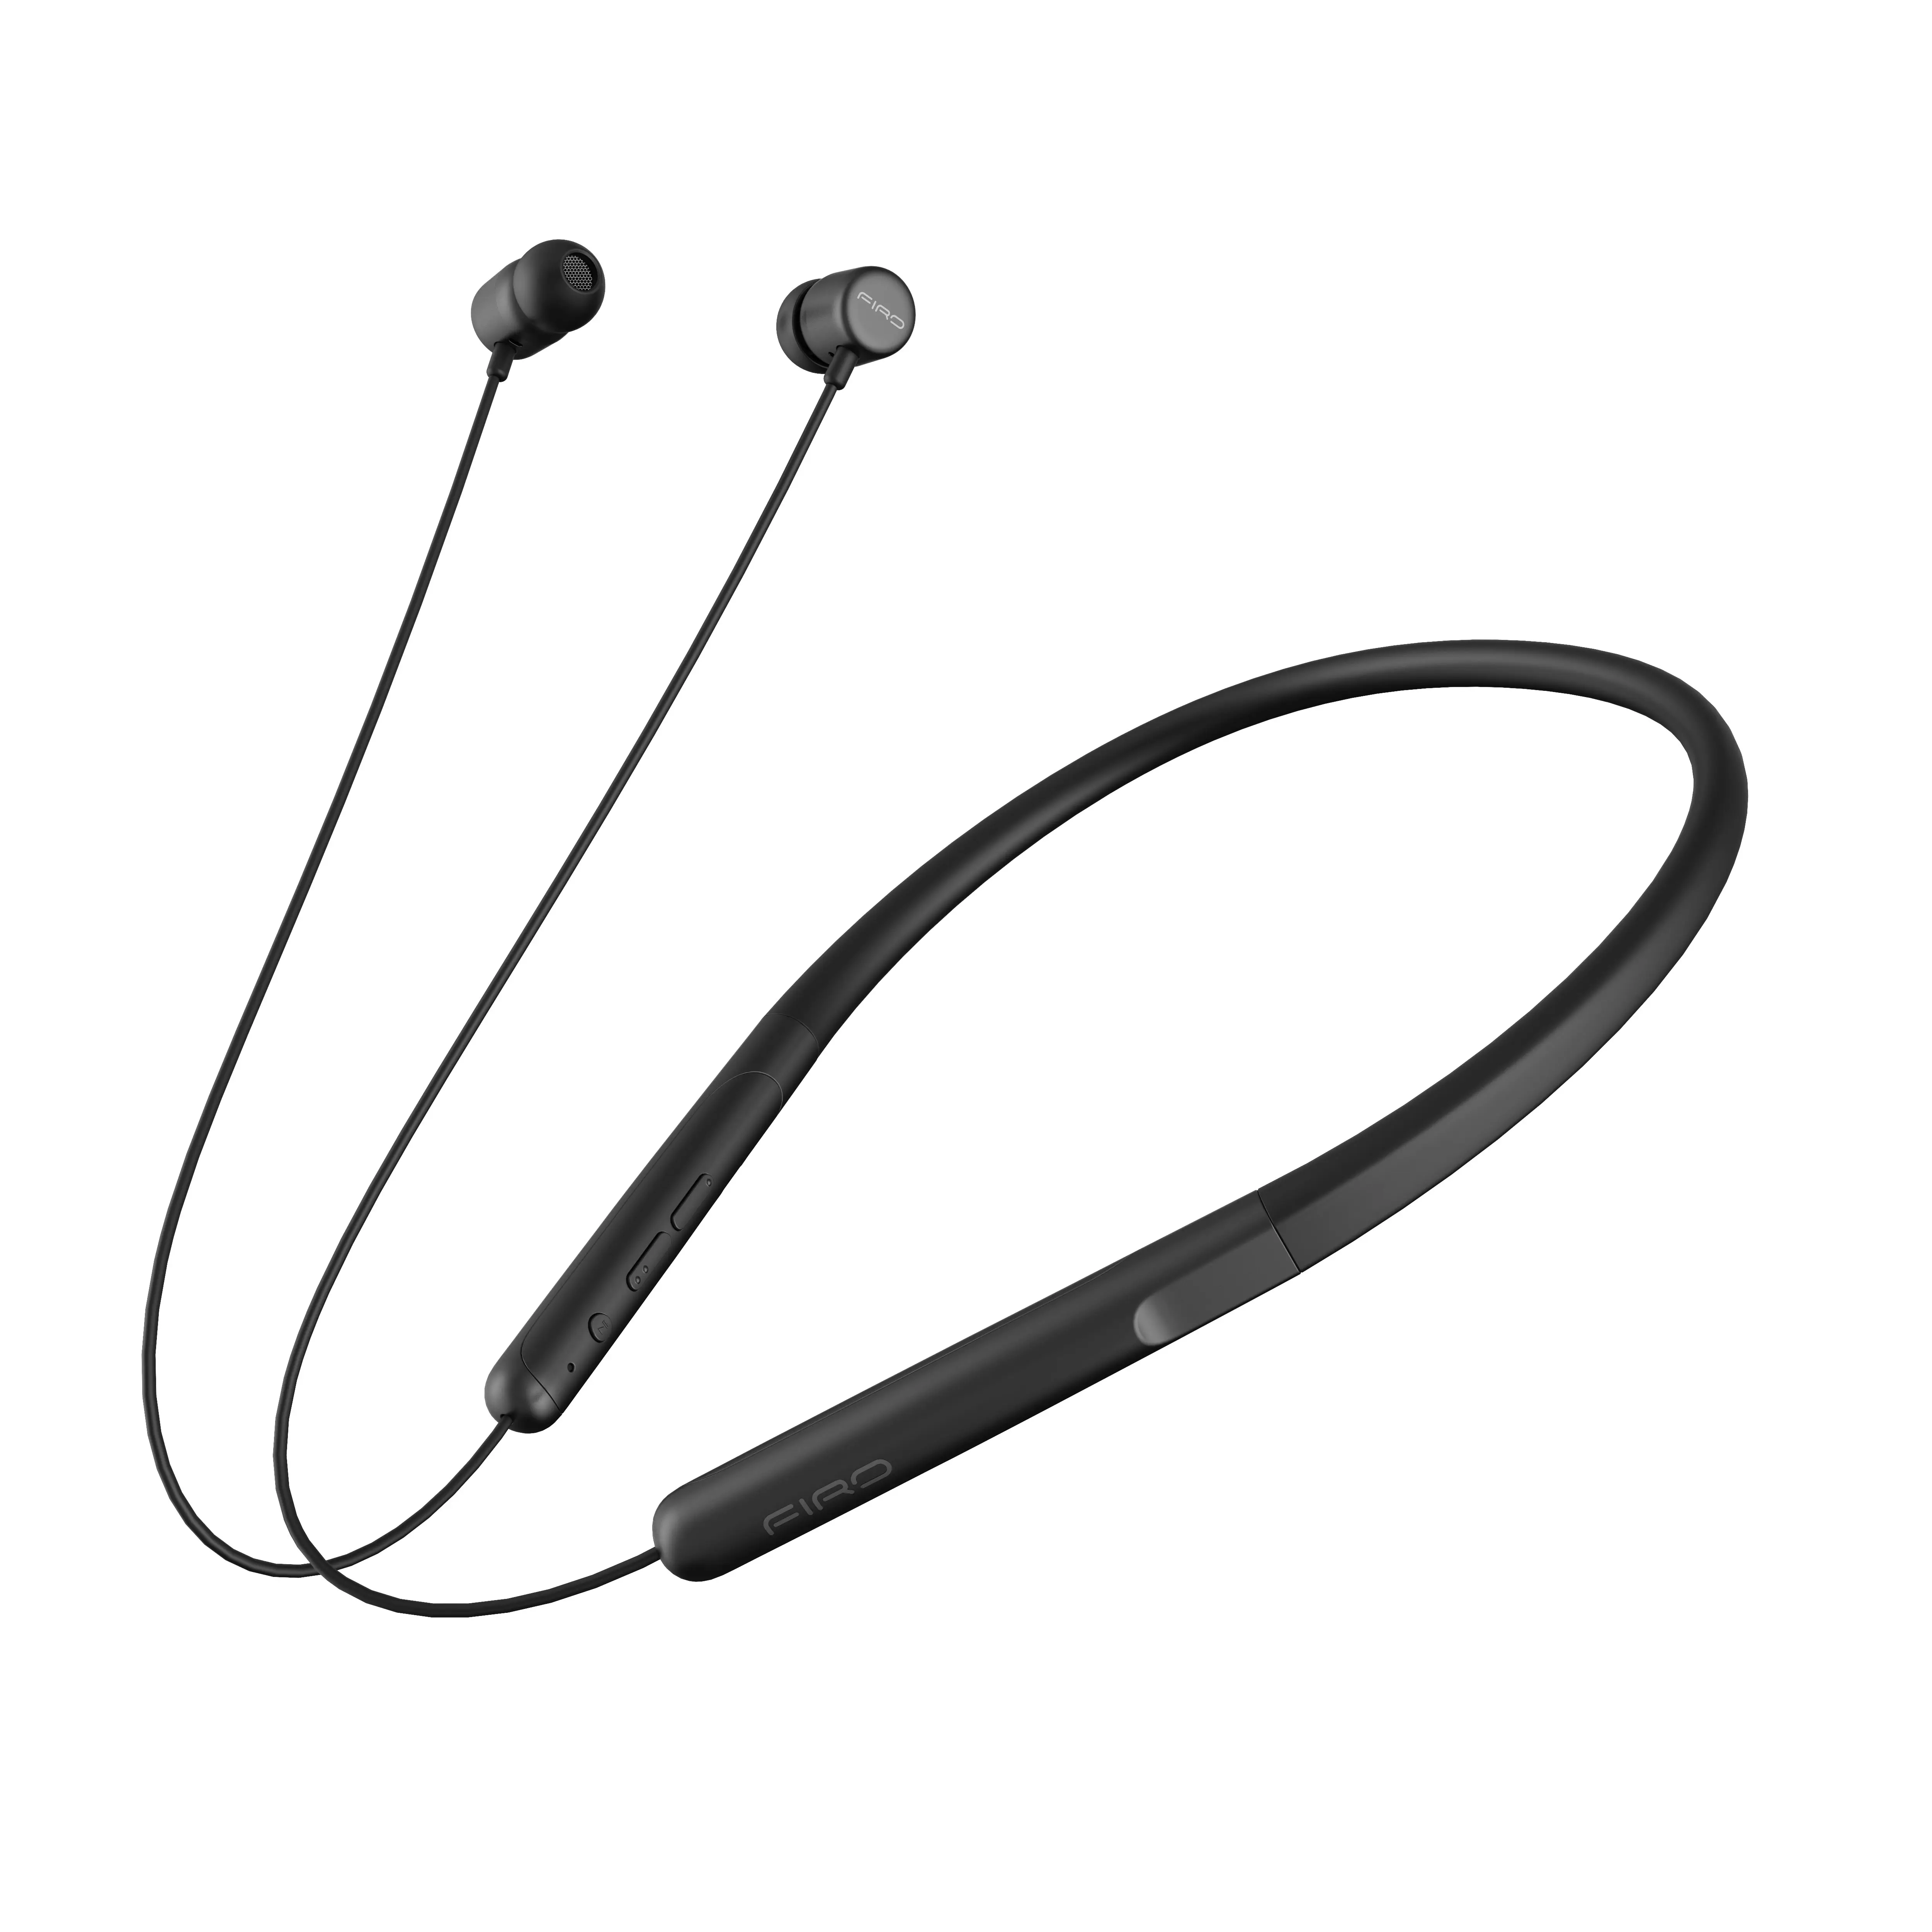 Auriculares Bluetooth con vibración, auriculares inalámbricos con vibración superior para trabajar